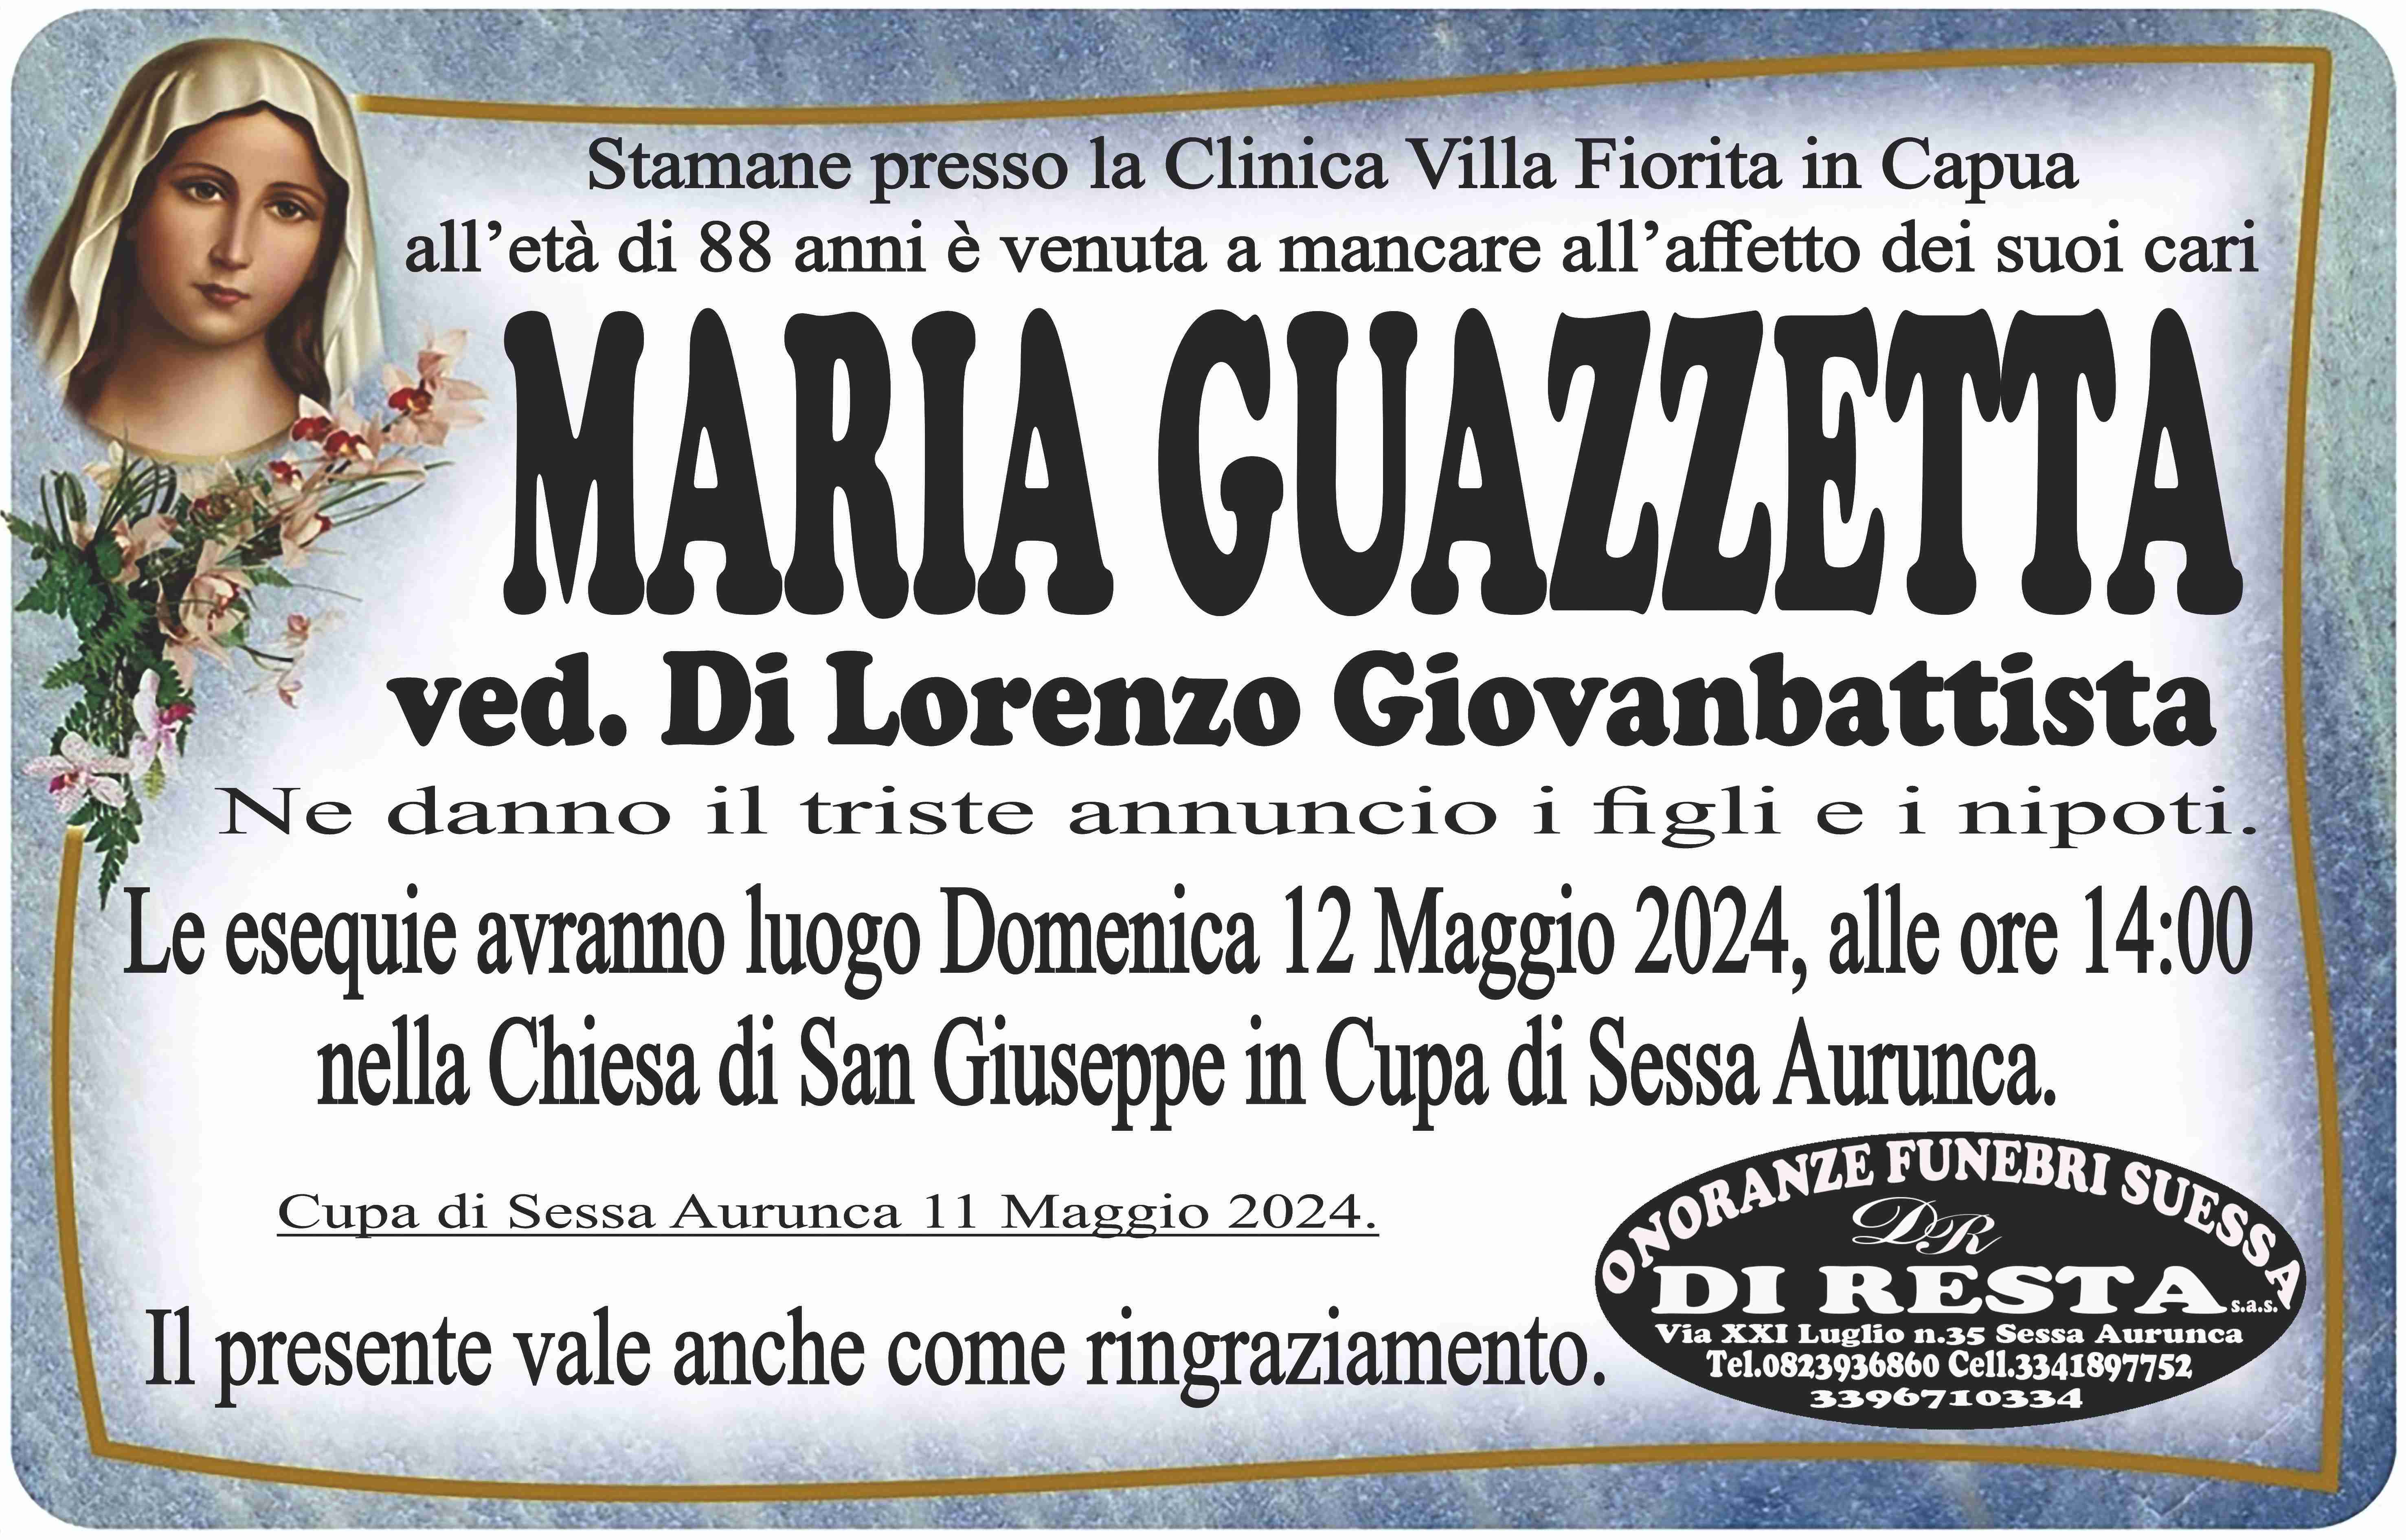 Maria Guazzetta